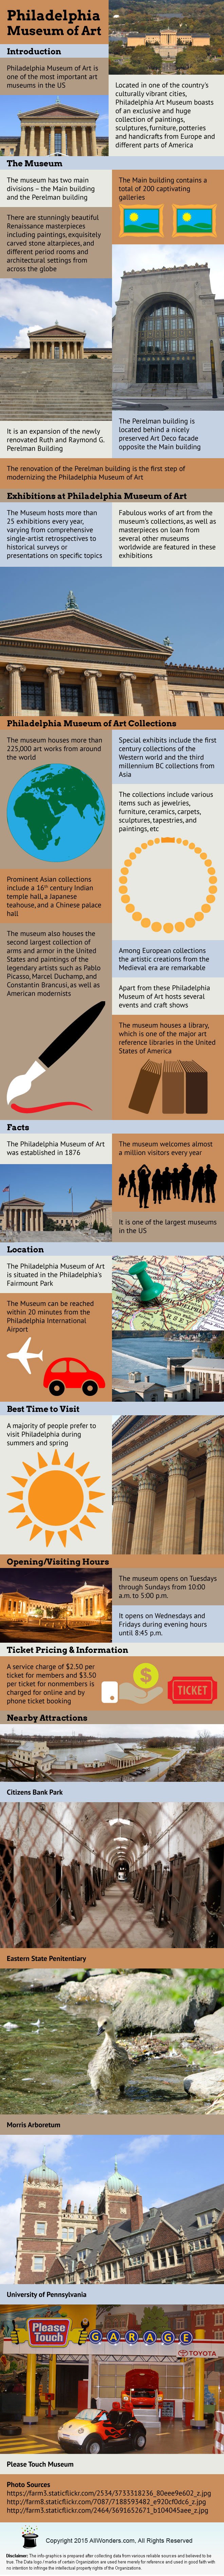  Philadelphia Museum of Art Infographic